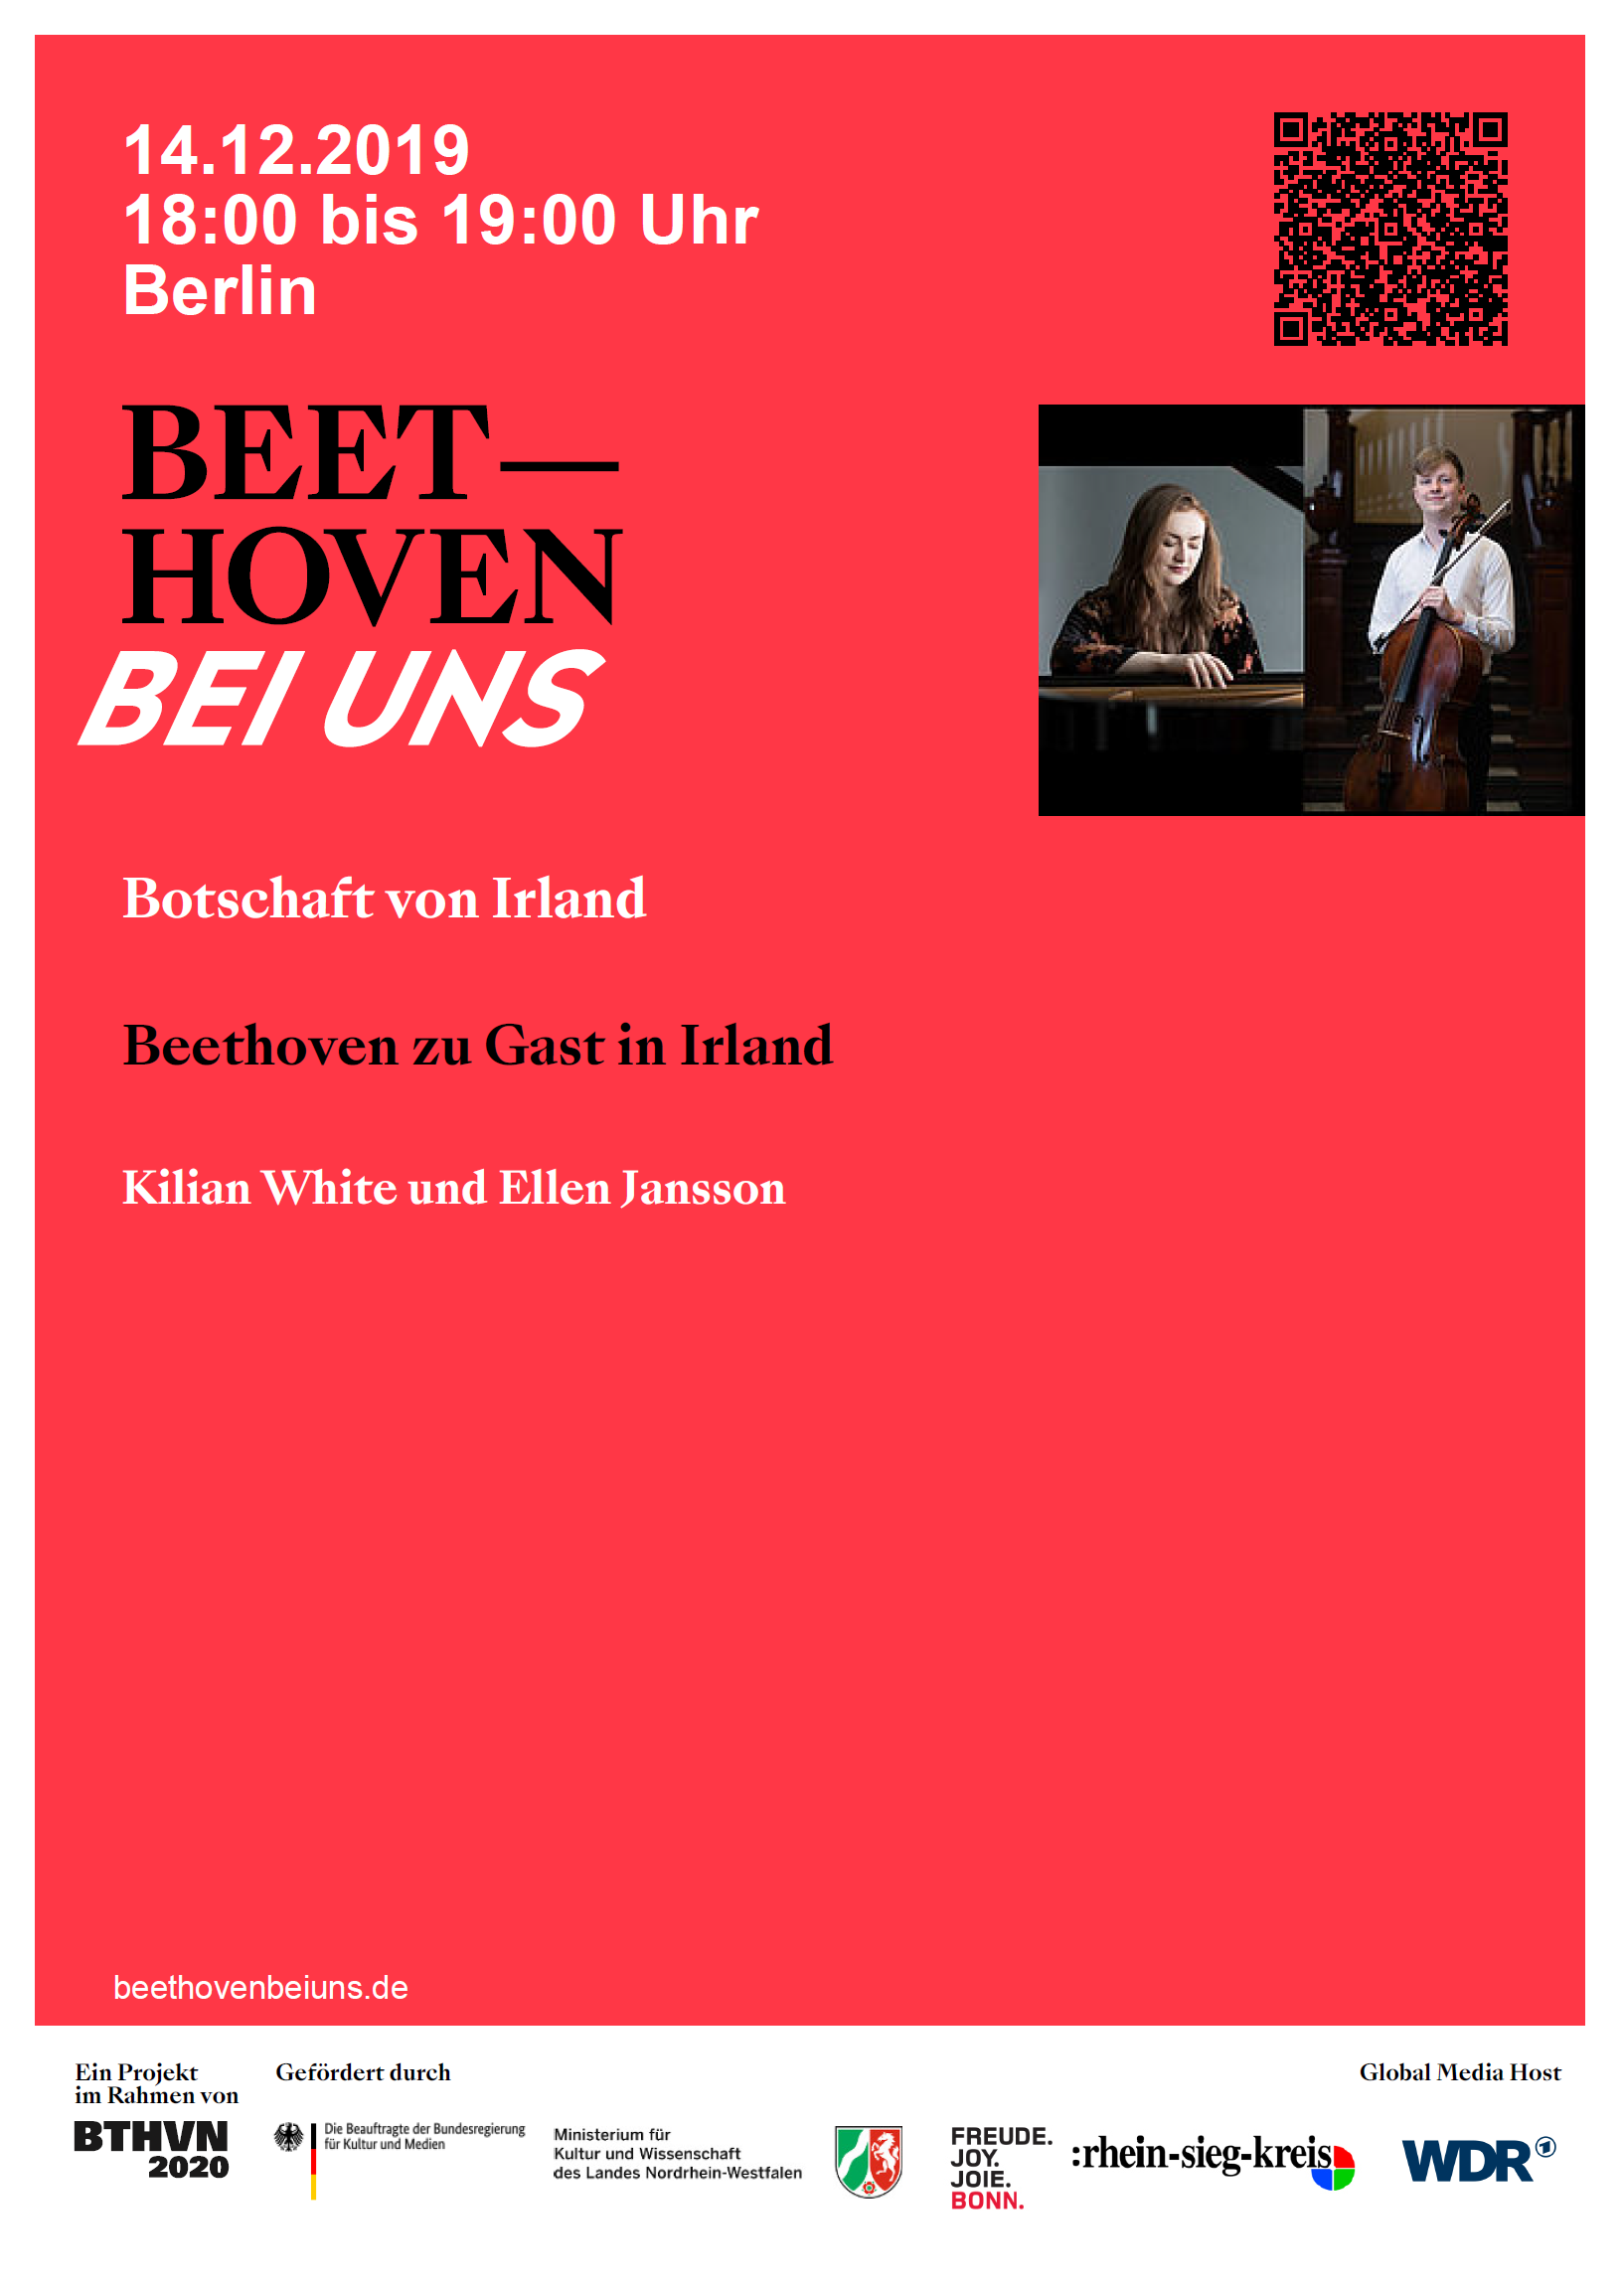 Beethoven zu Gast in Irland